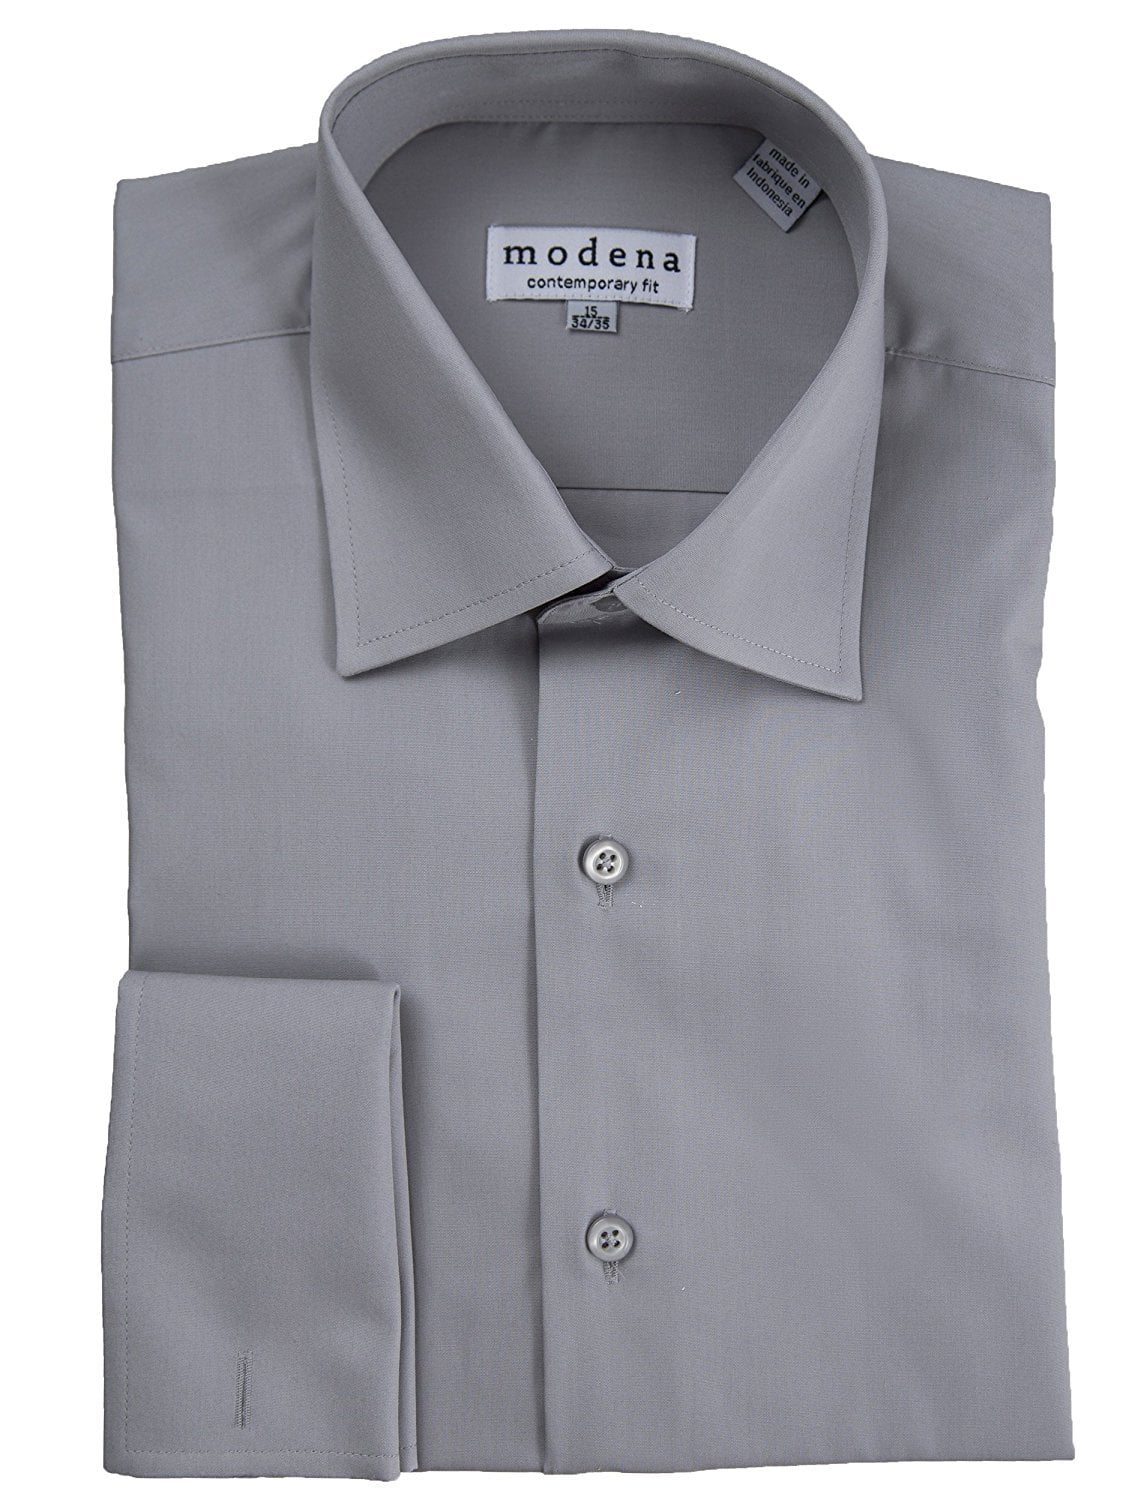 Modena - Modena Men's Contemporary (Slim) Fit Spread Collar French Cuff ...